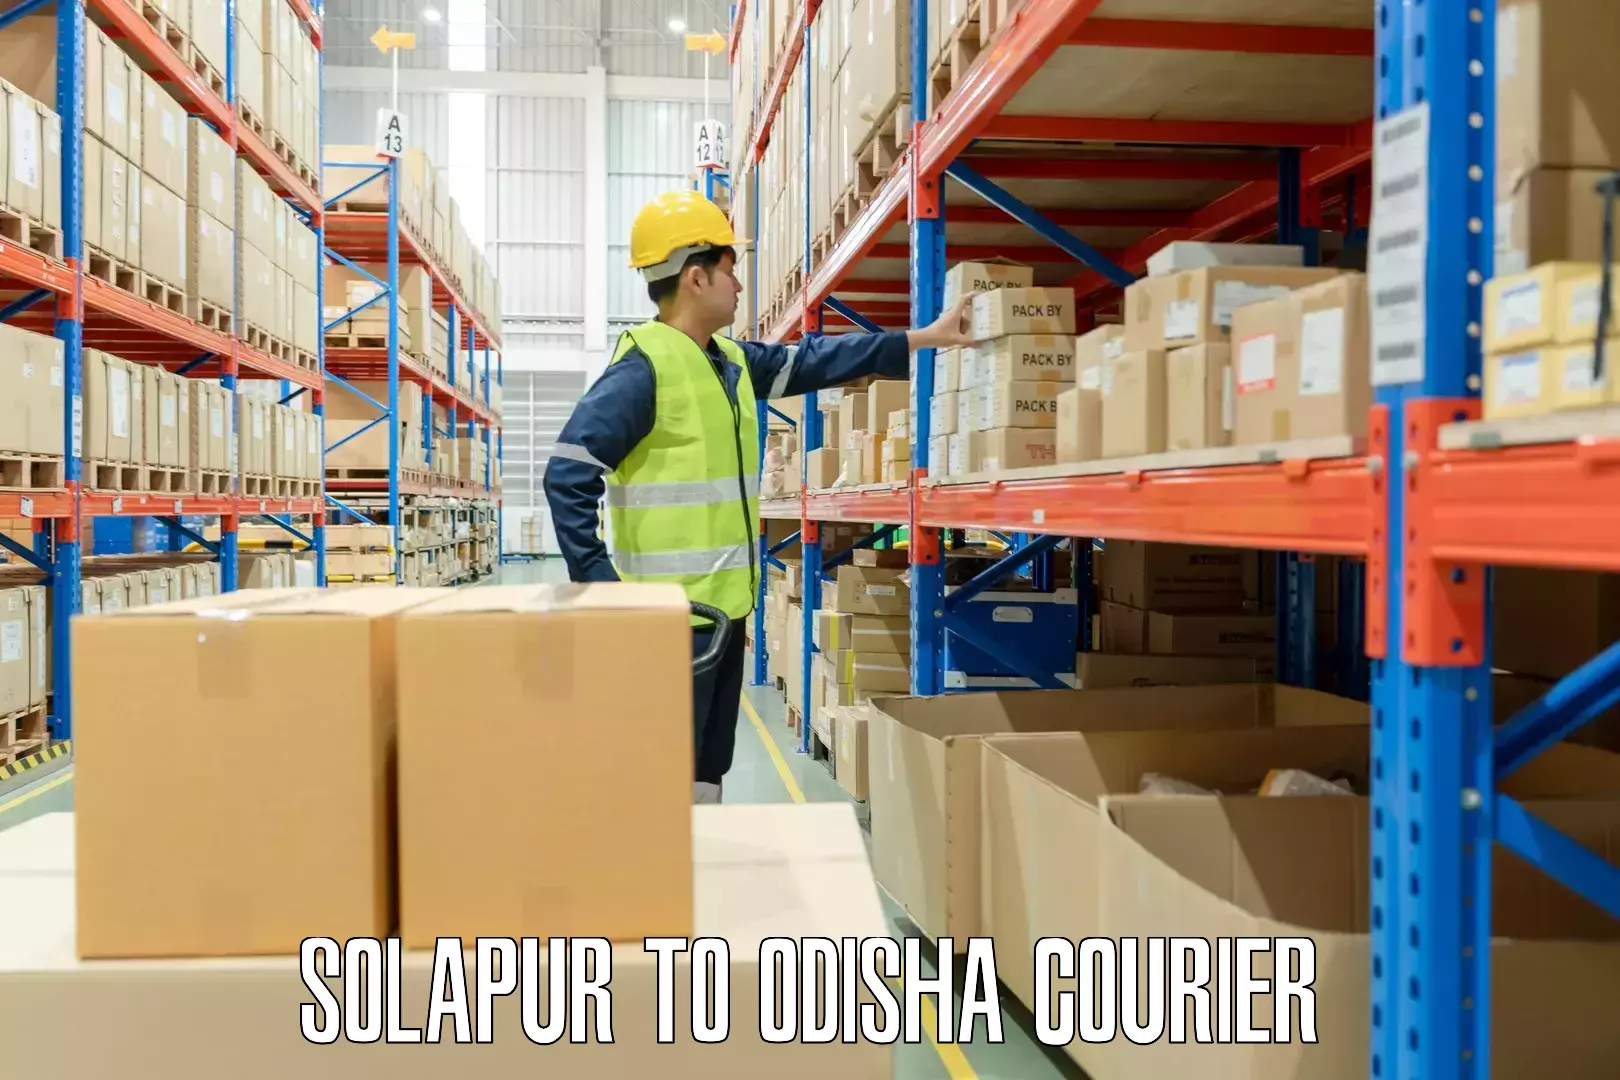 Luggage shipment tracking Solapur to Odisha